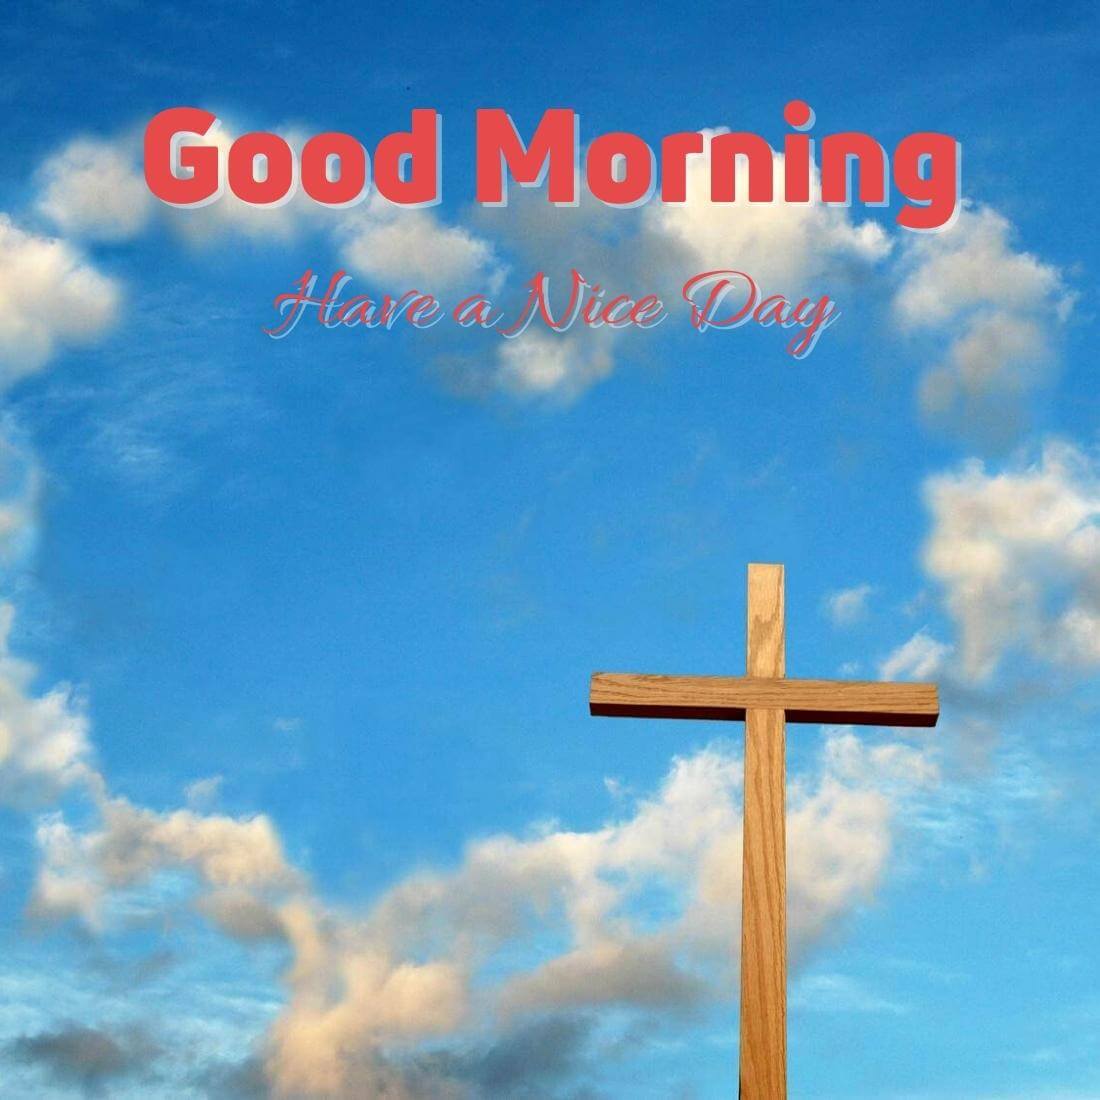 Lord Jesus good morning Wallpaper Free Download